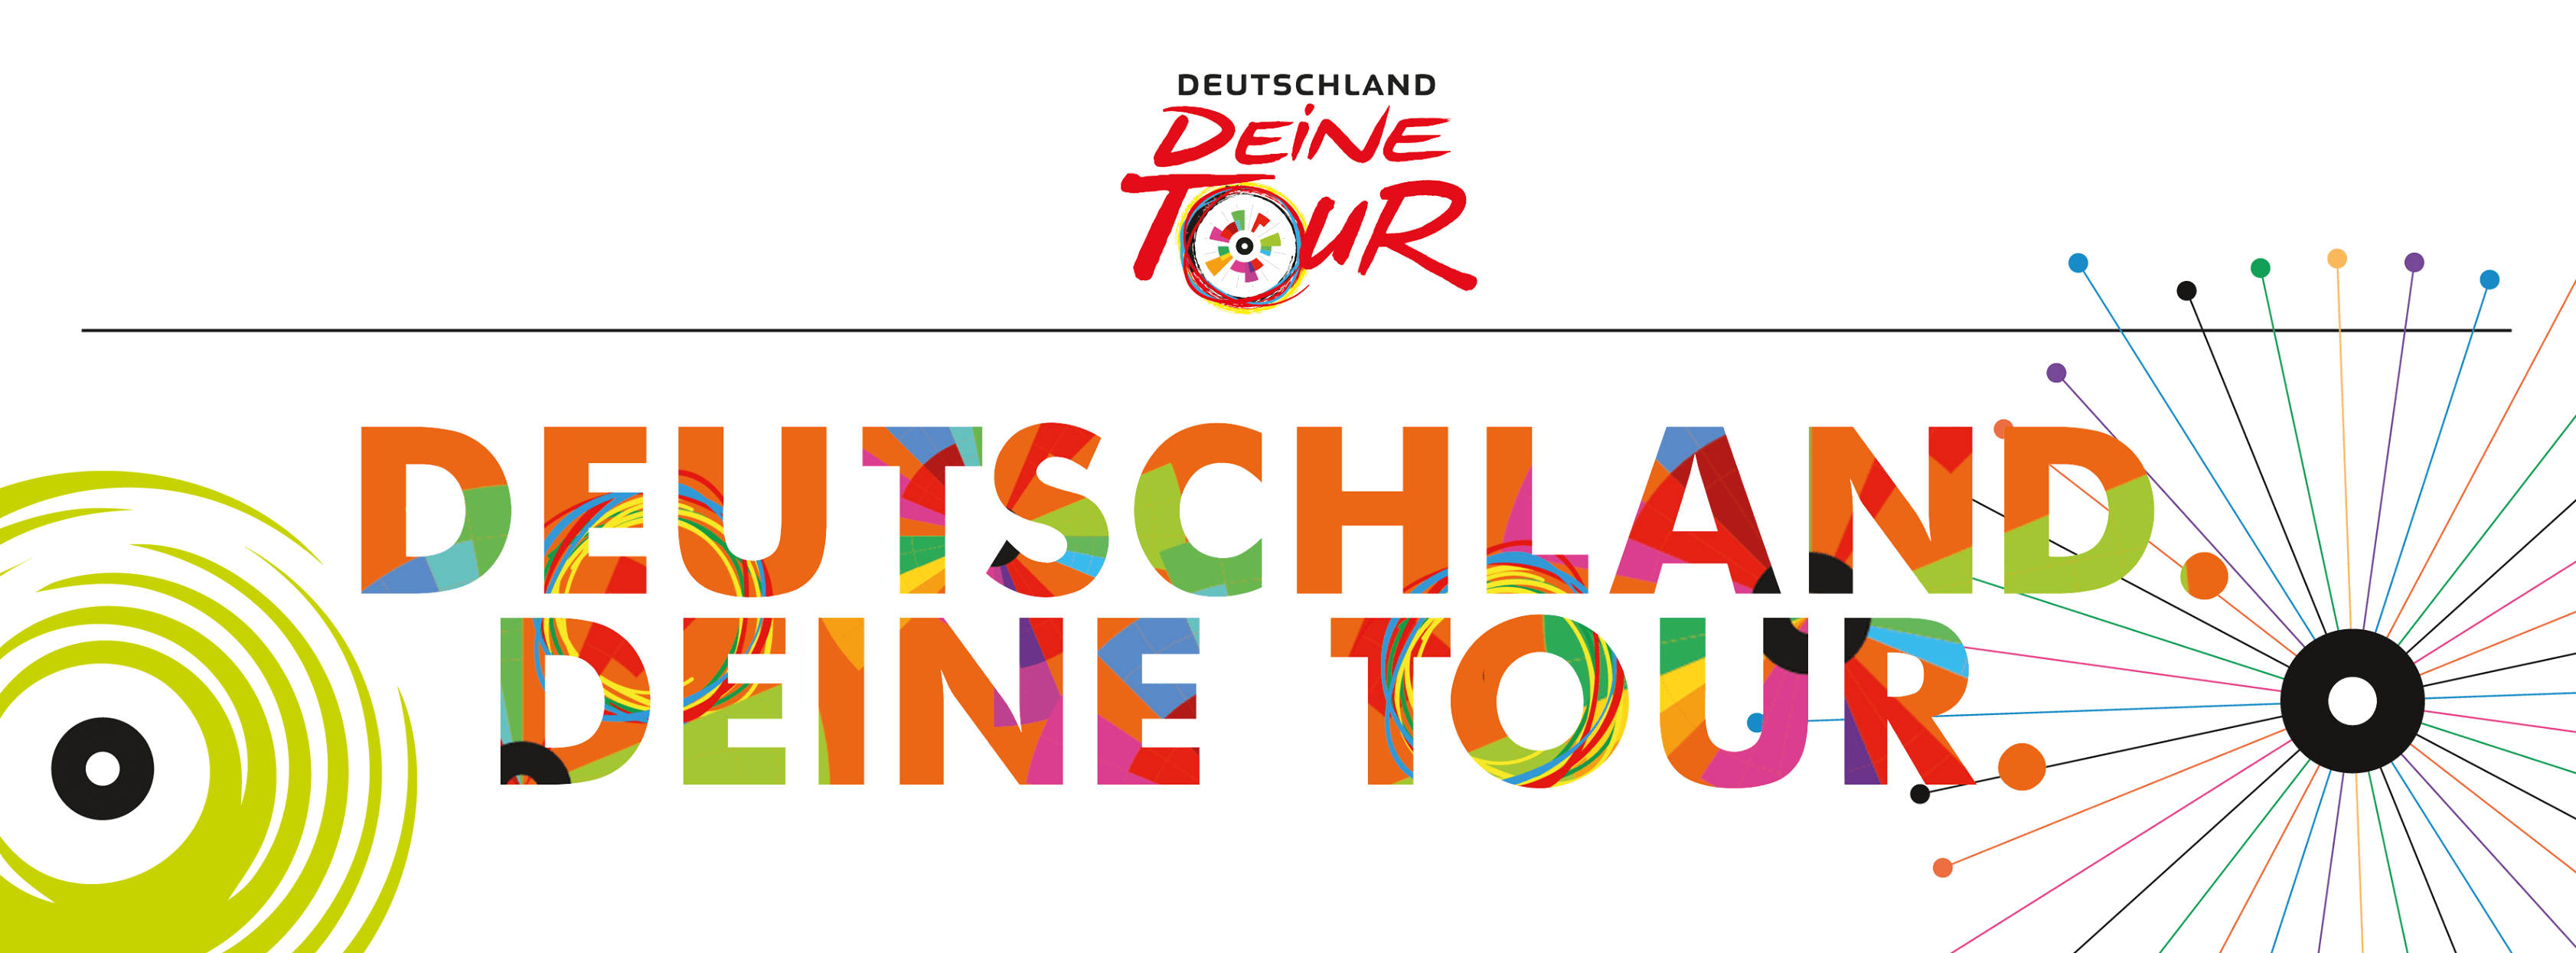 Deutschland Deine Tour Tourmaker Ciclista.net Deutschlandtour 2018